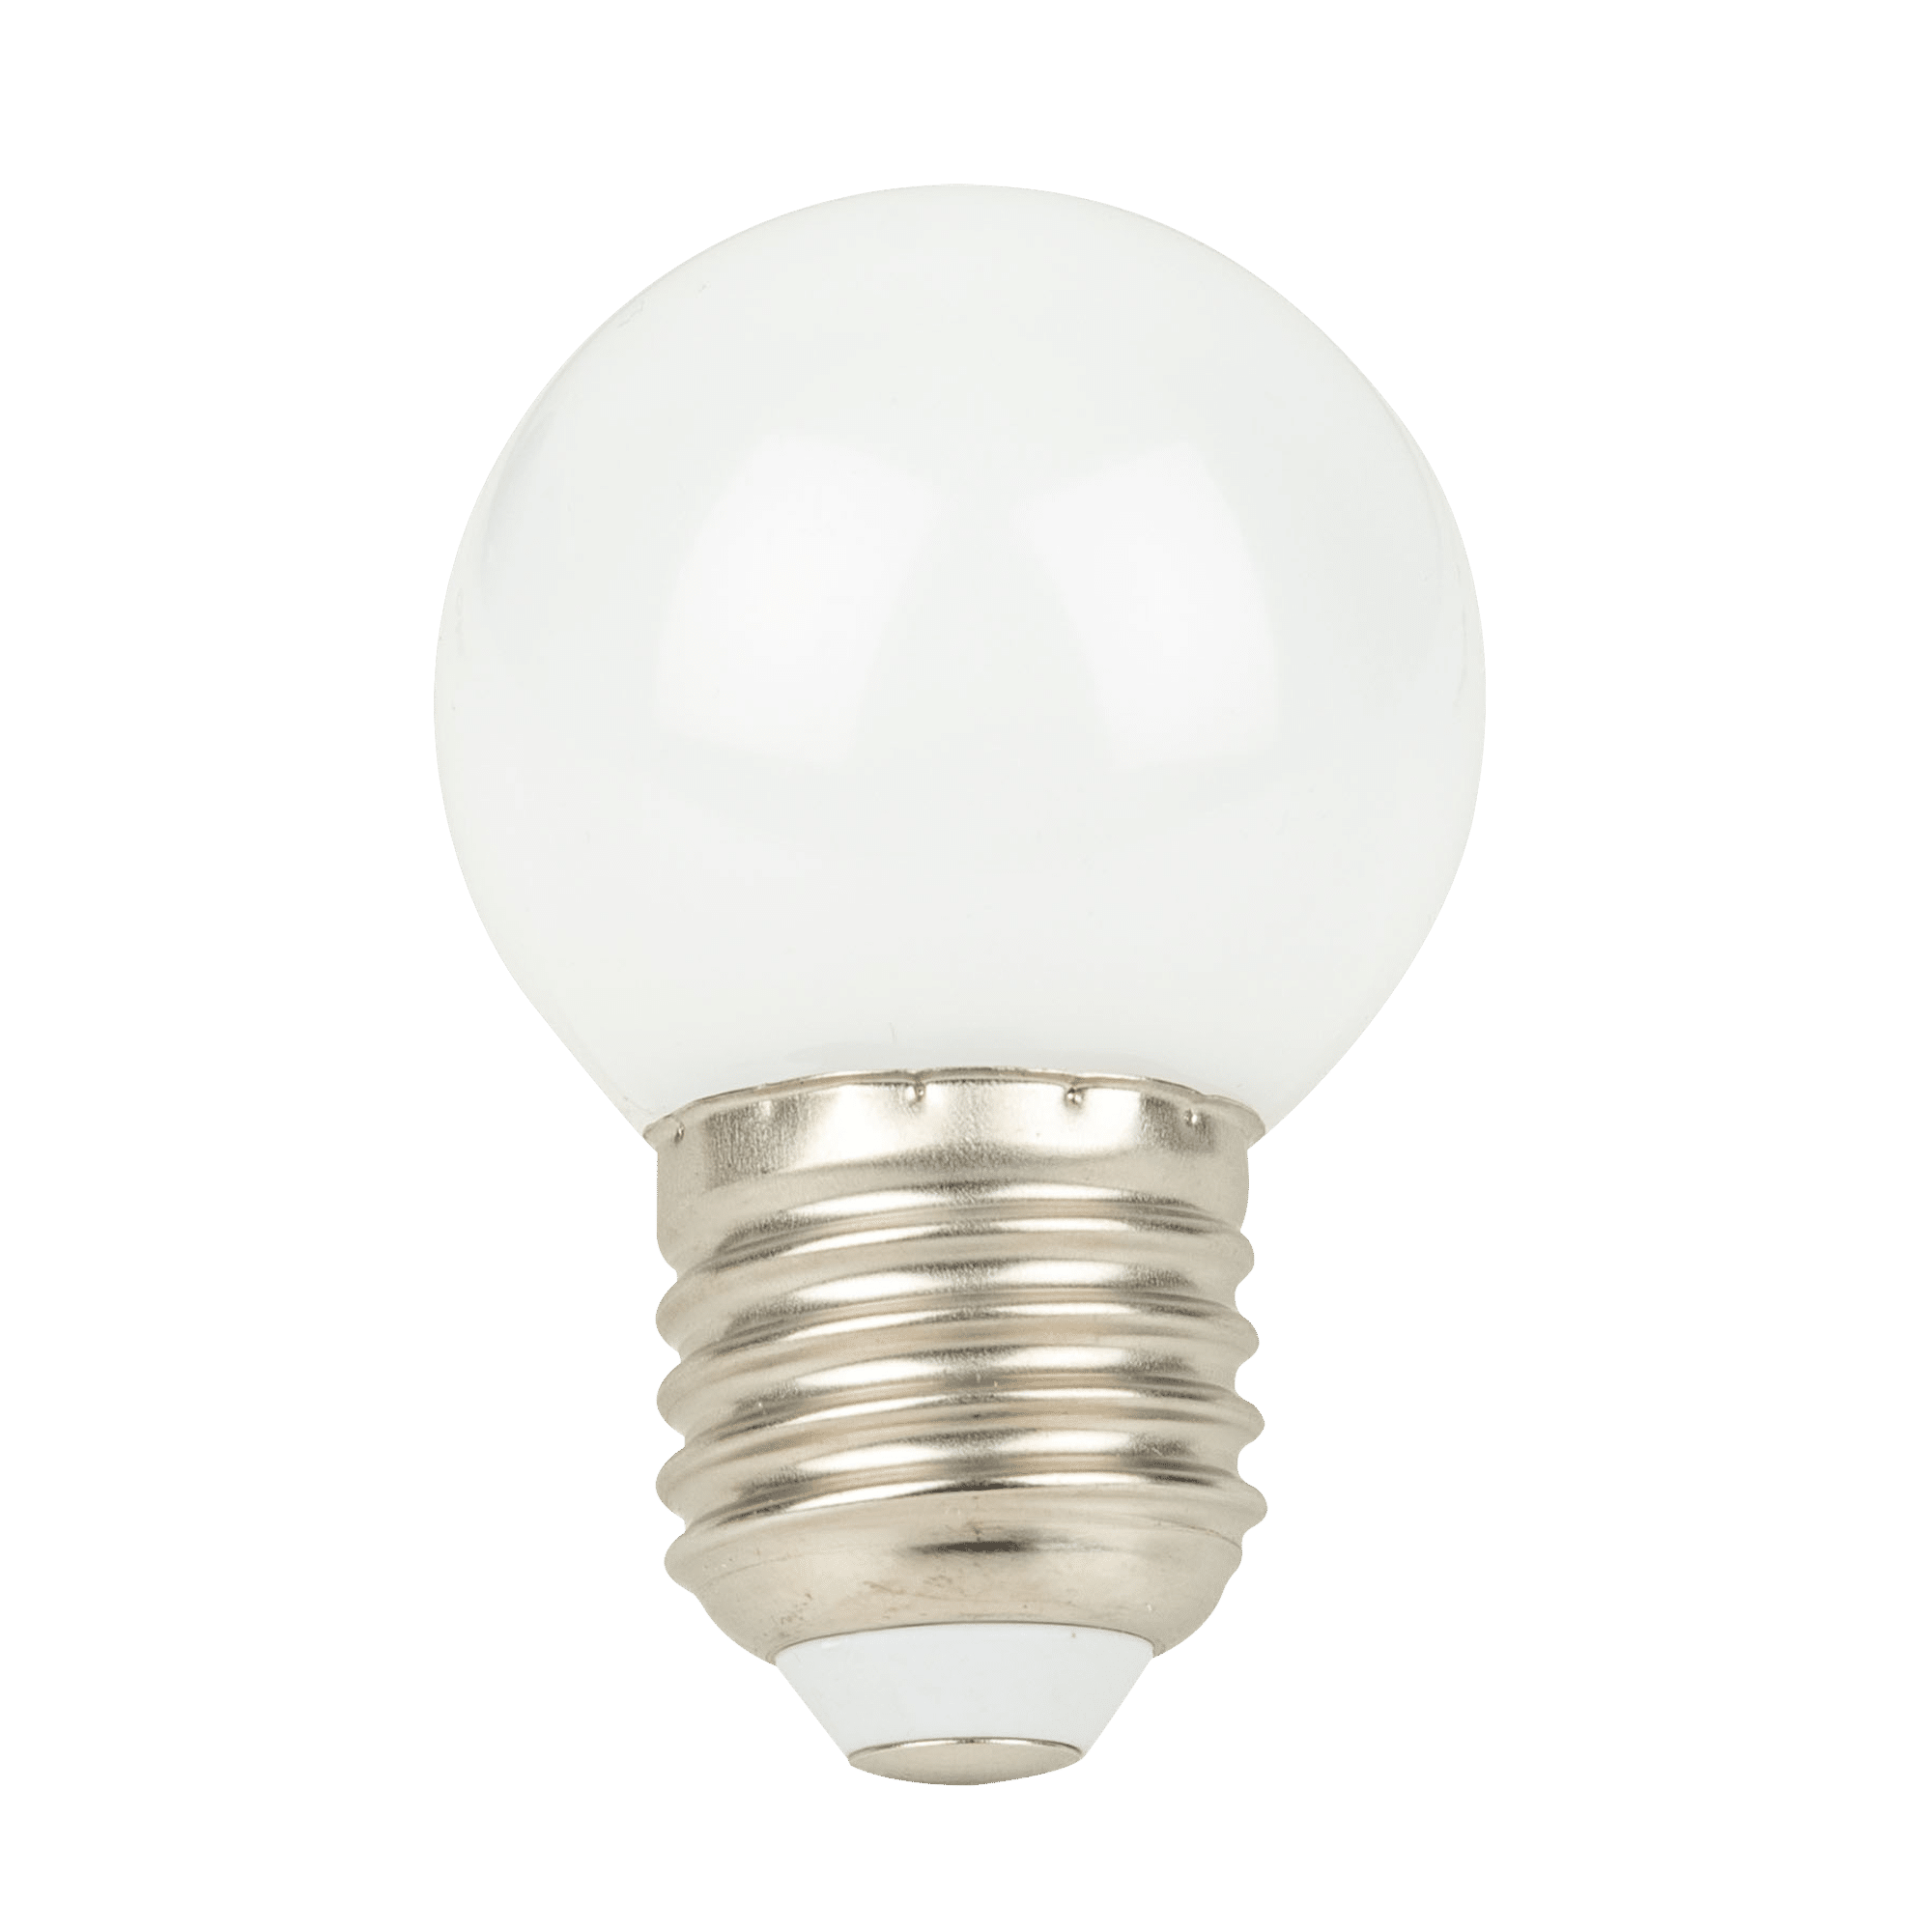 G45 LED Bulb E27 - Onlinediscowinkel.nl